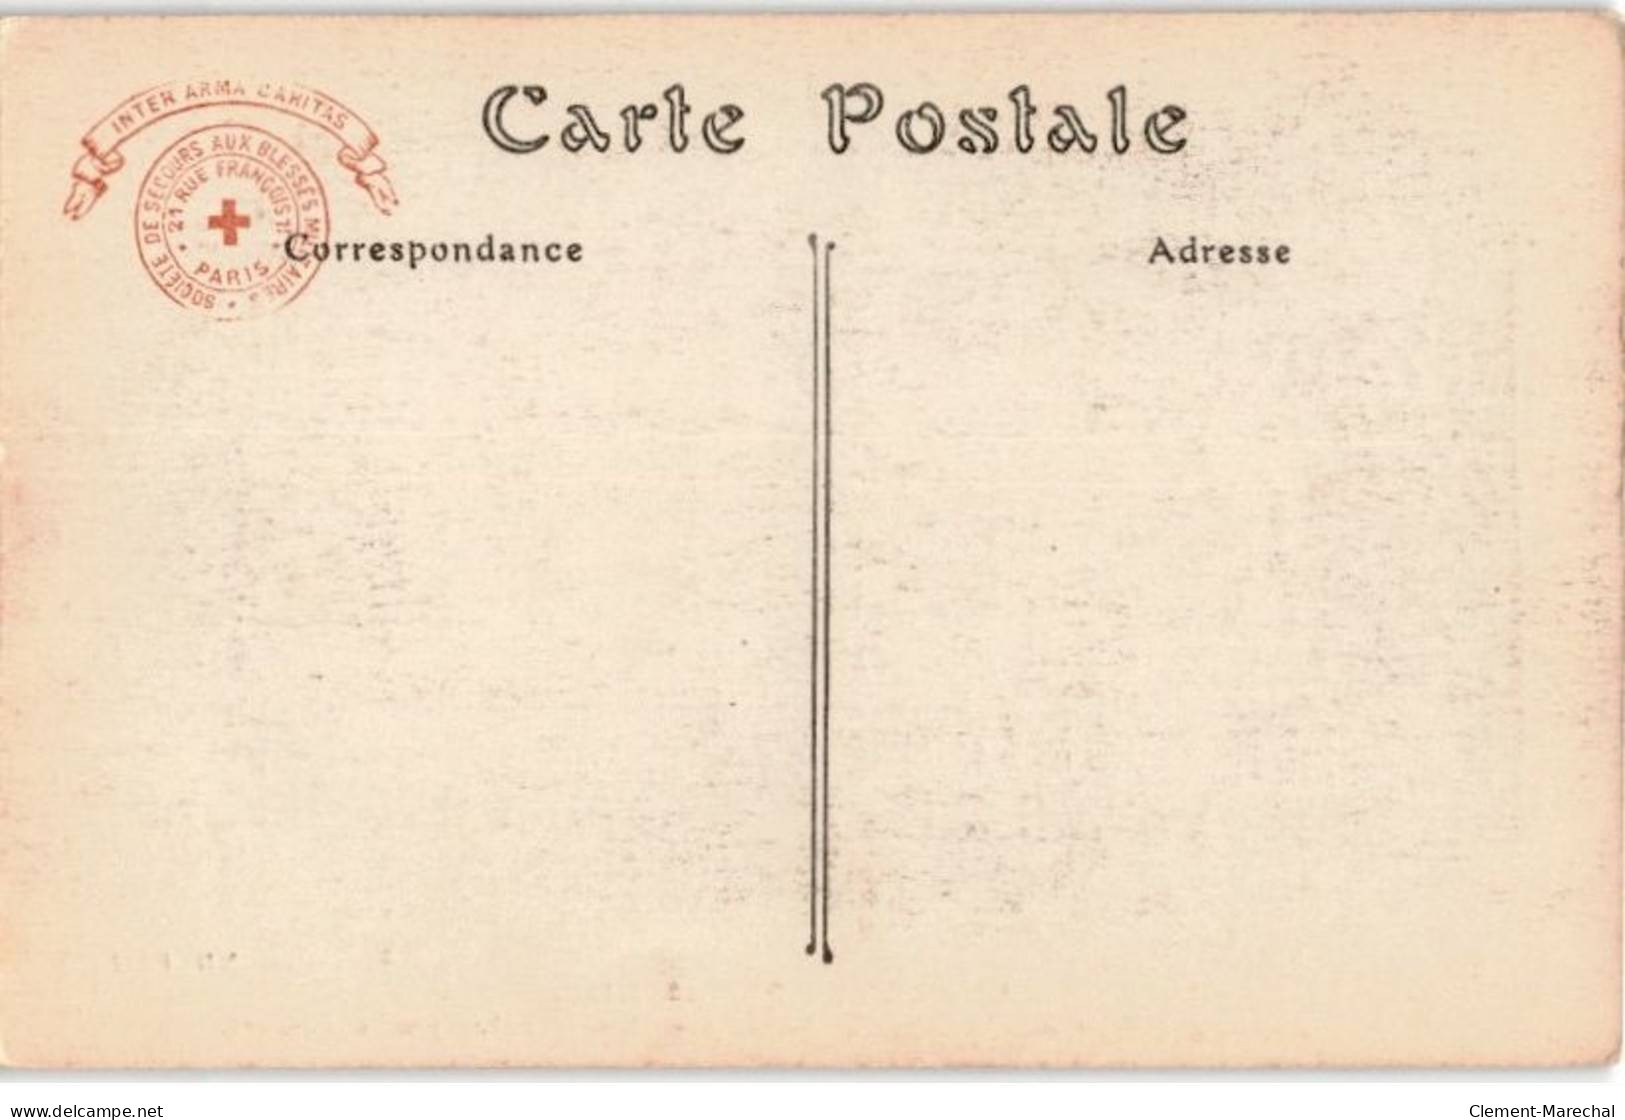 AVIATION: Campagne De 1914-1915 Exposition à L'hôtel Des Invalides à Paris Aéroplane (taube) - Très Bon état - ....-1914: Precursors